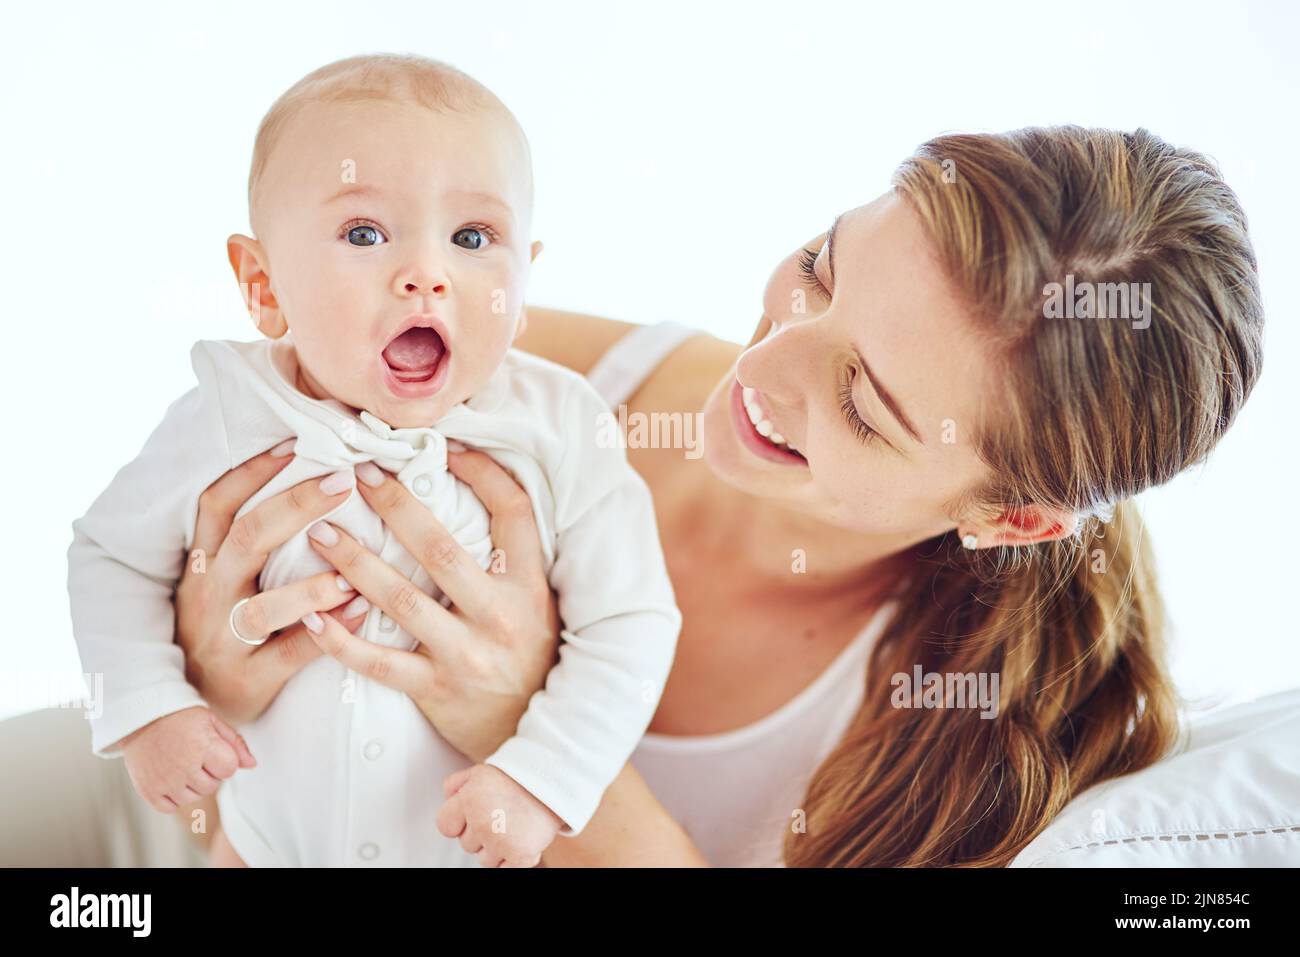 Une mère heureuse, jeune et célibataire se liant et prenant soin de bébé adorable, appréciant la parentalité et étant une nouvelle maman. Bonne femme en expérience maternelle Banque D'Images